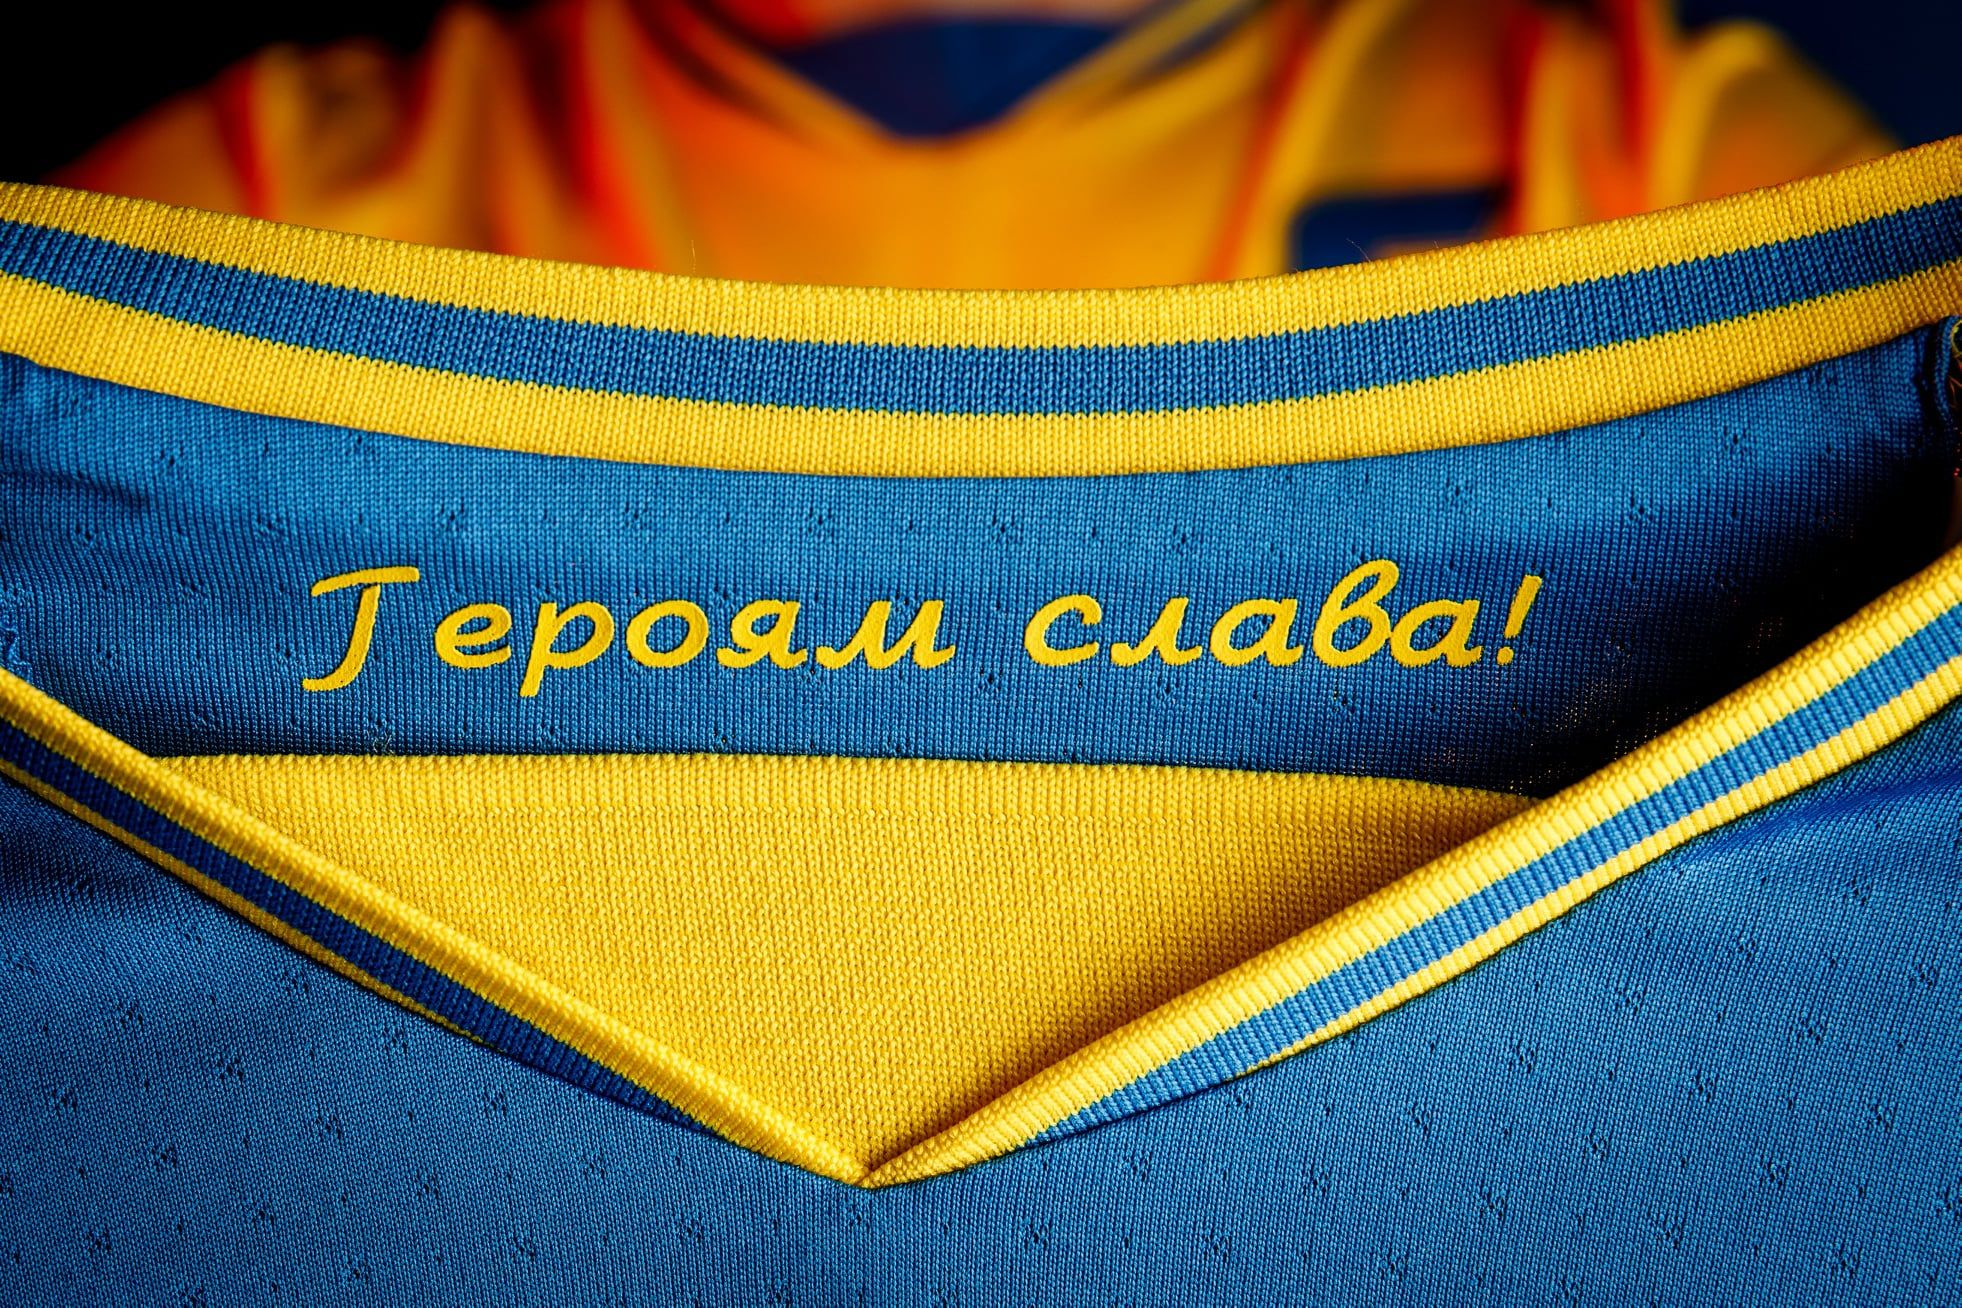 У Росії за носіння футболки збірної України можуть посадити - деталі